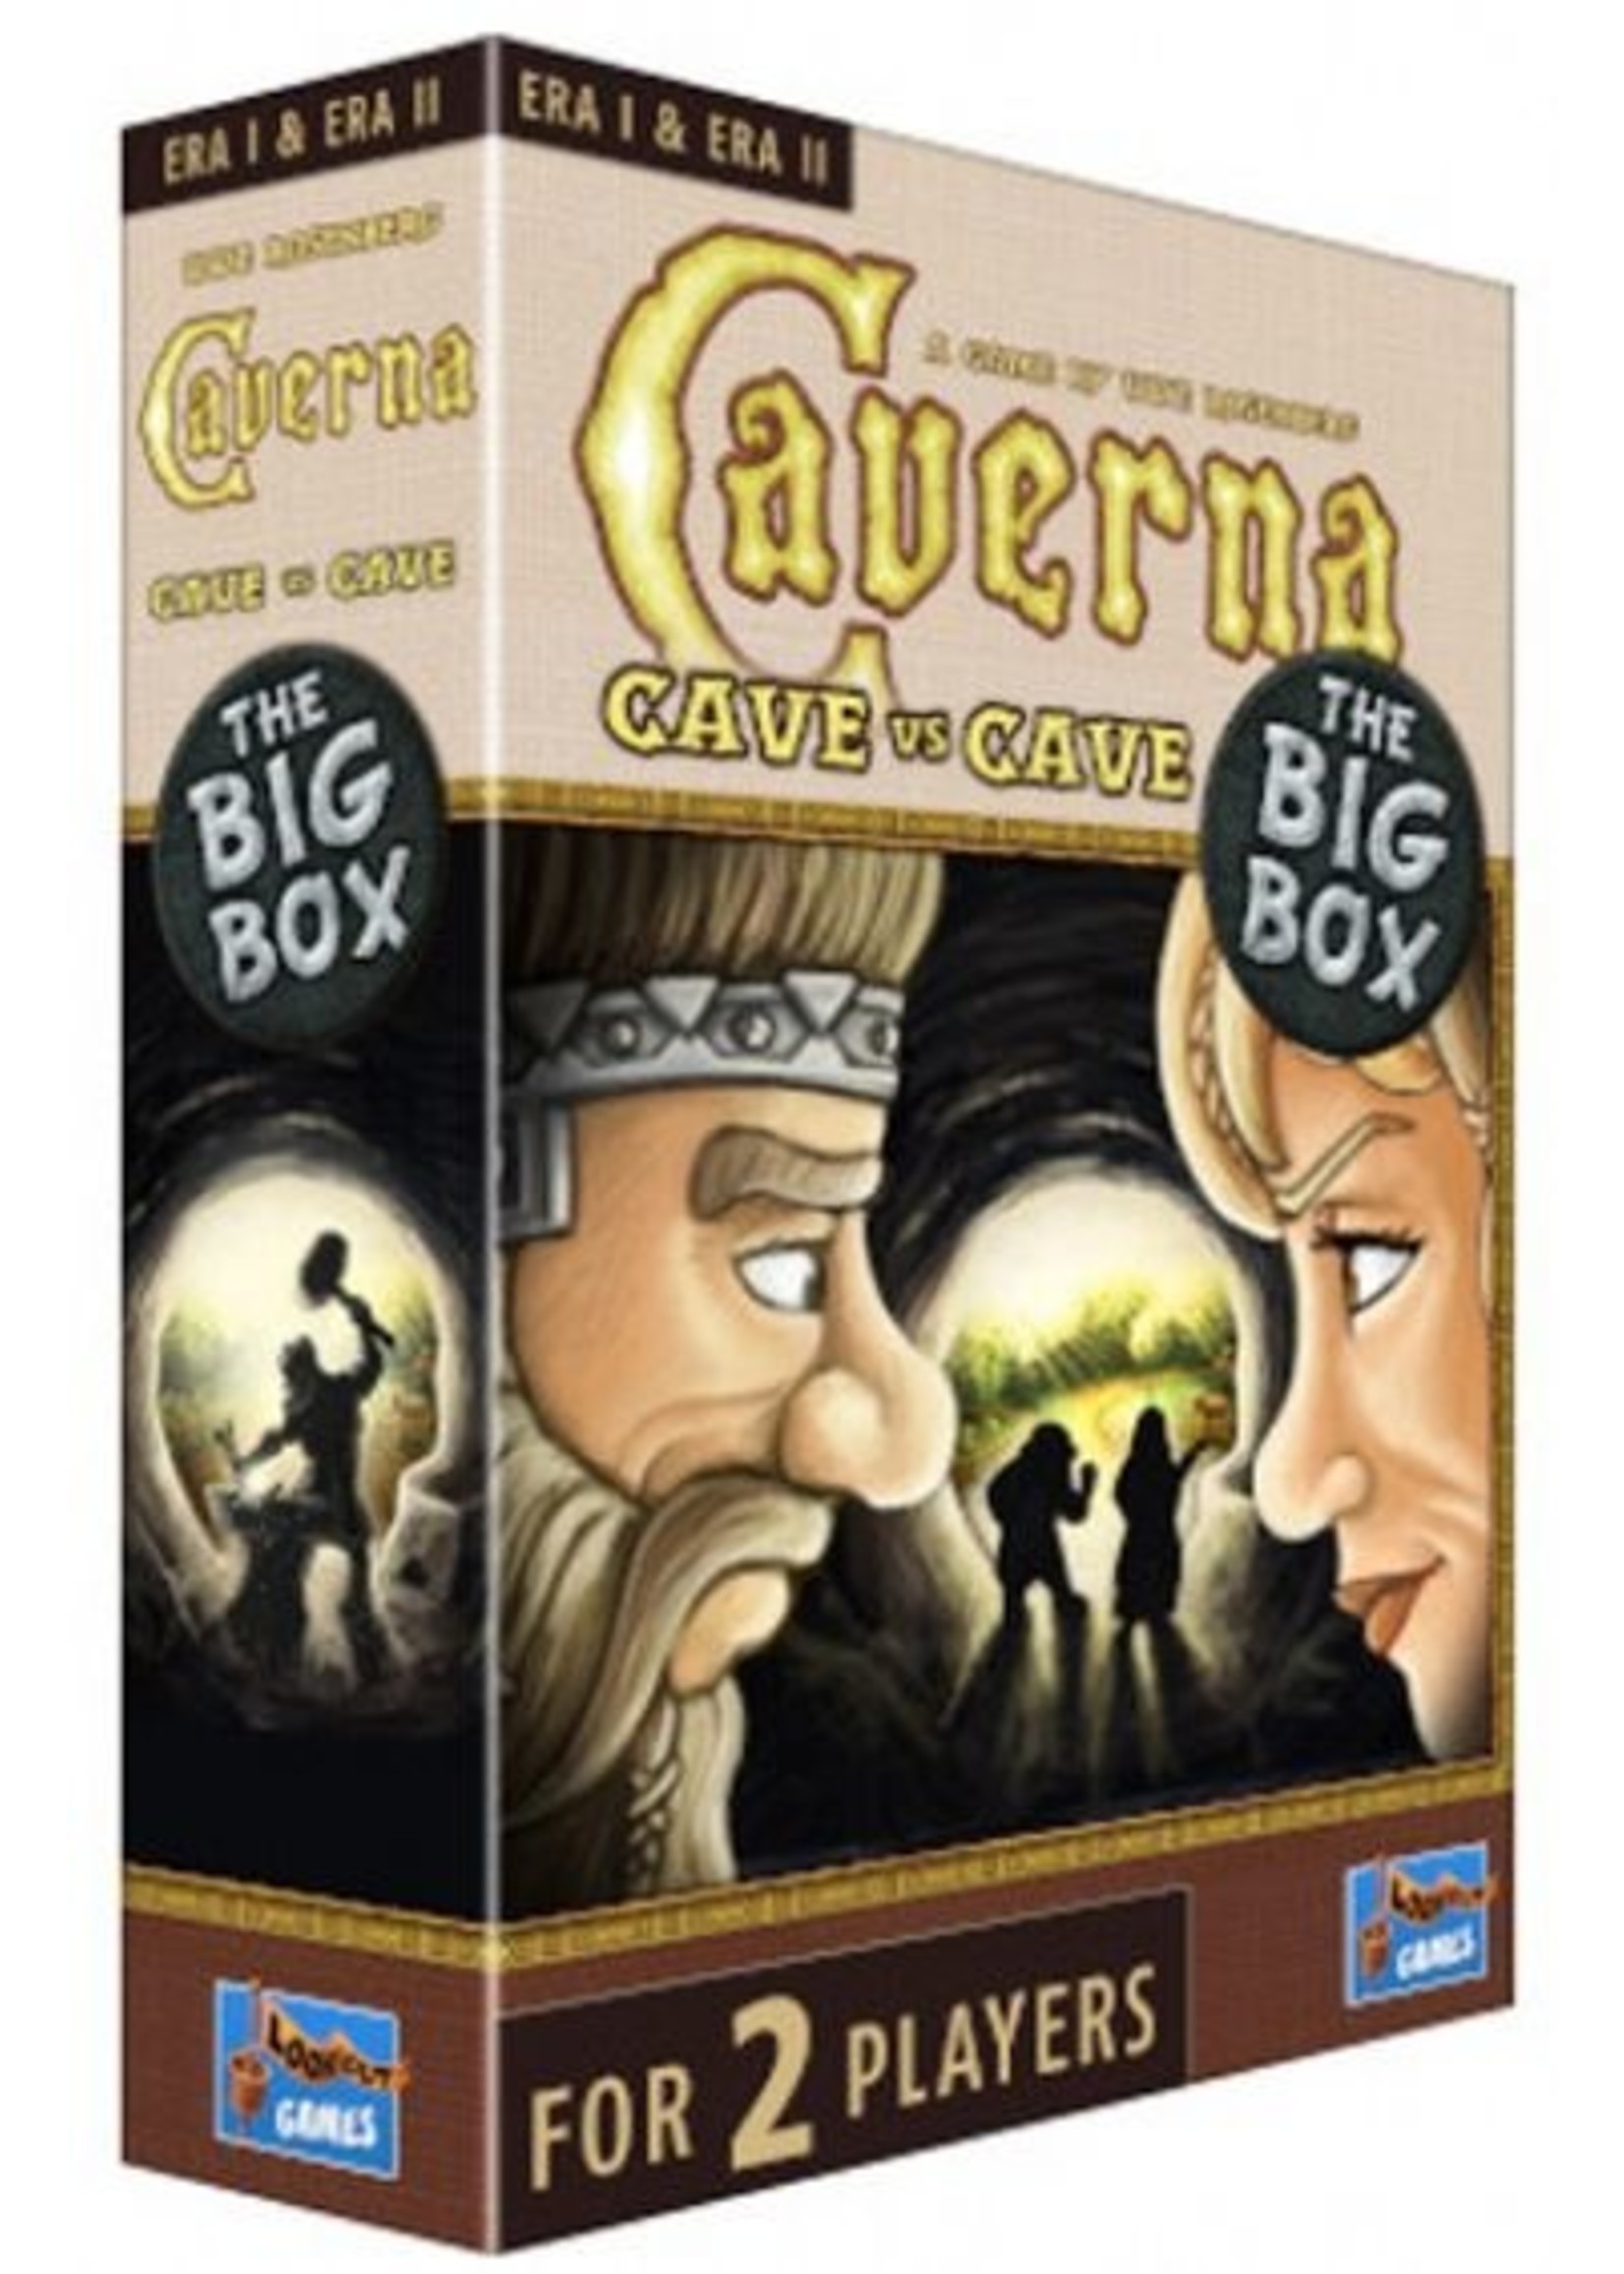 Caverna: Cave vs Cave Big Box